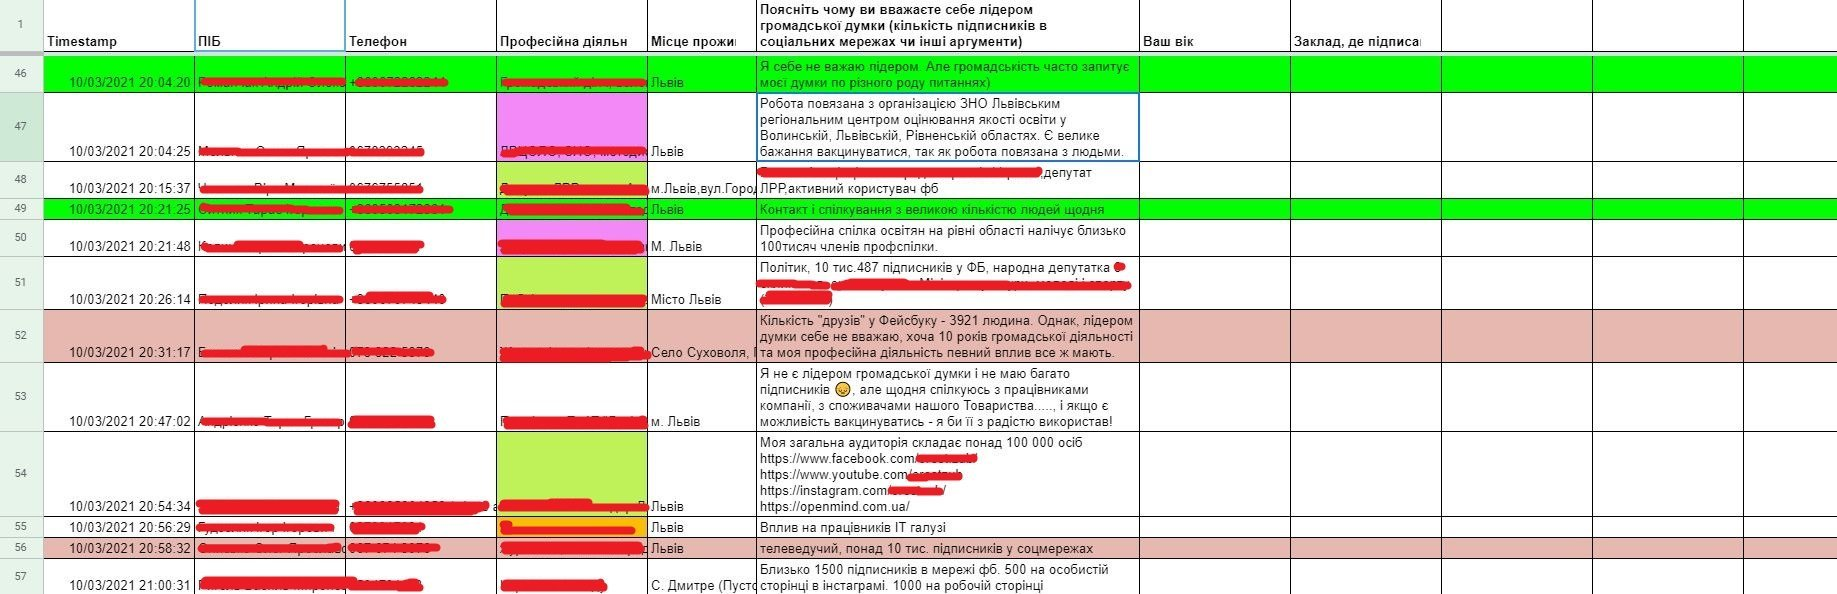 Так виглядають таблиці з персональною інформацією мешканців Львівщини, які записалися на позачергову вакцинацію